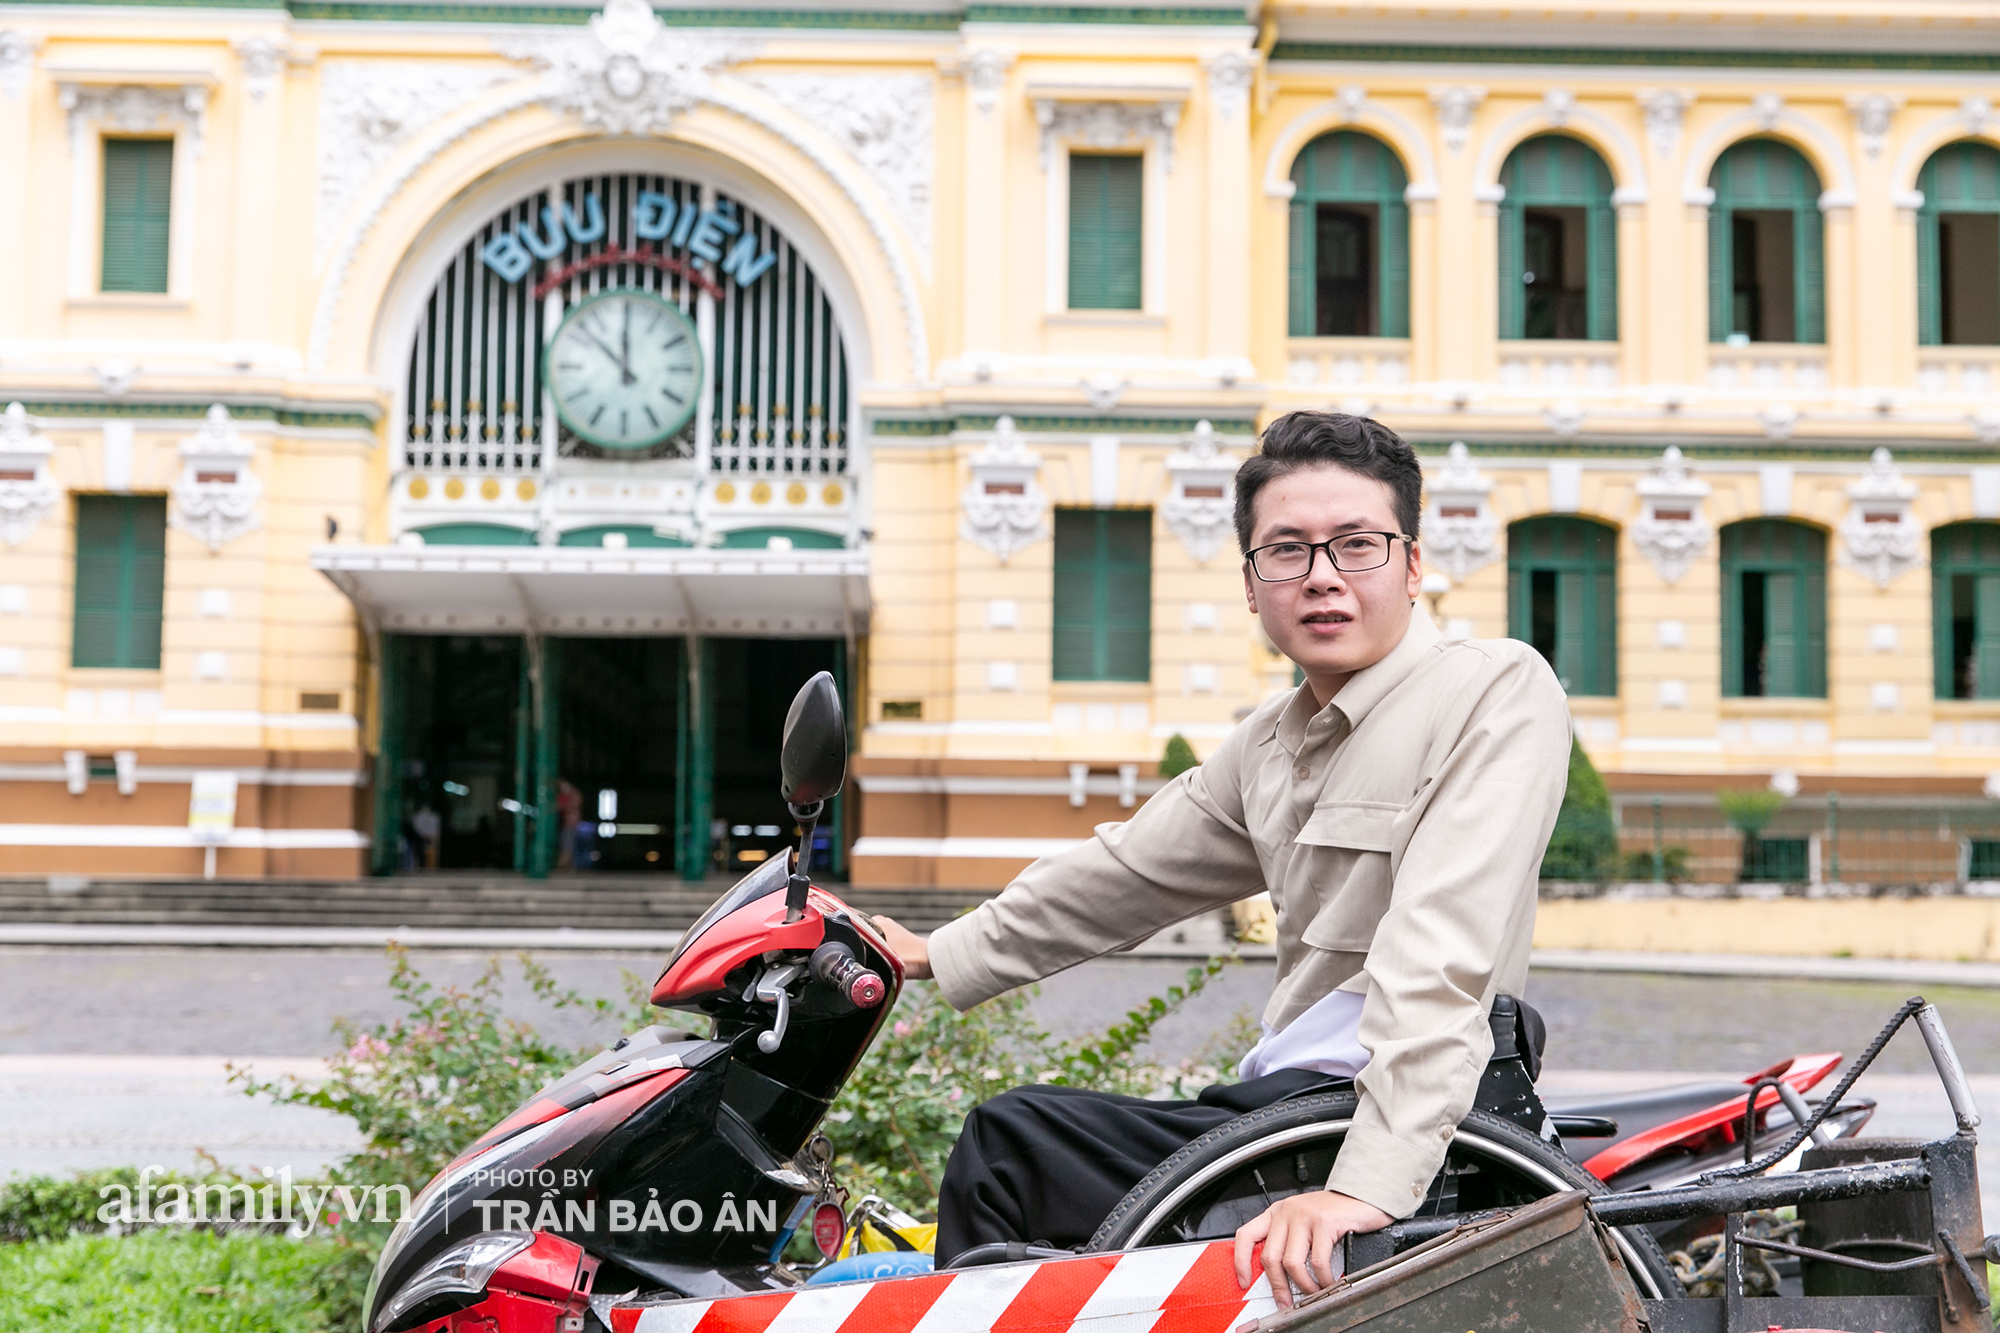 Chàng trai đi phượt bằng xe lăn, chinh phục những con đèo hiểm trở nhất Việt Nam: “Mất 10 năm định nghĩa hai từ “tự do” bằng cách chưa ai từng làm!” - Ảnh 10.